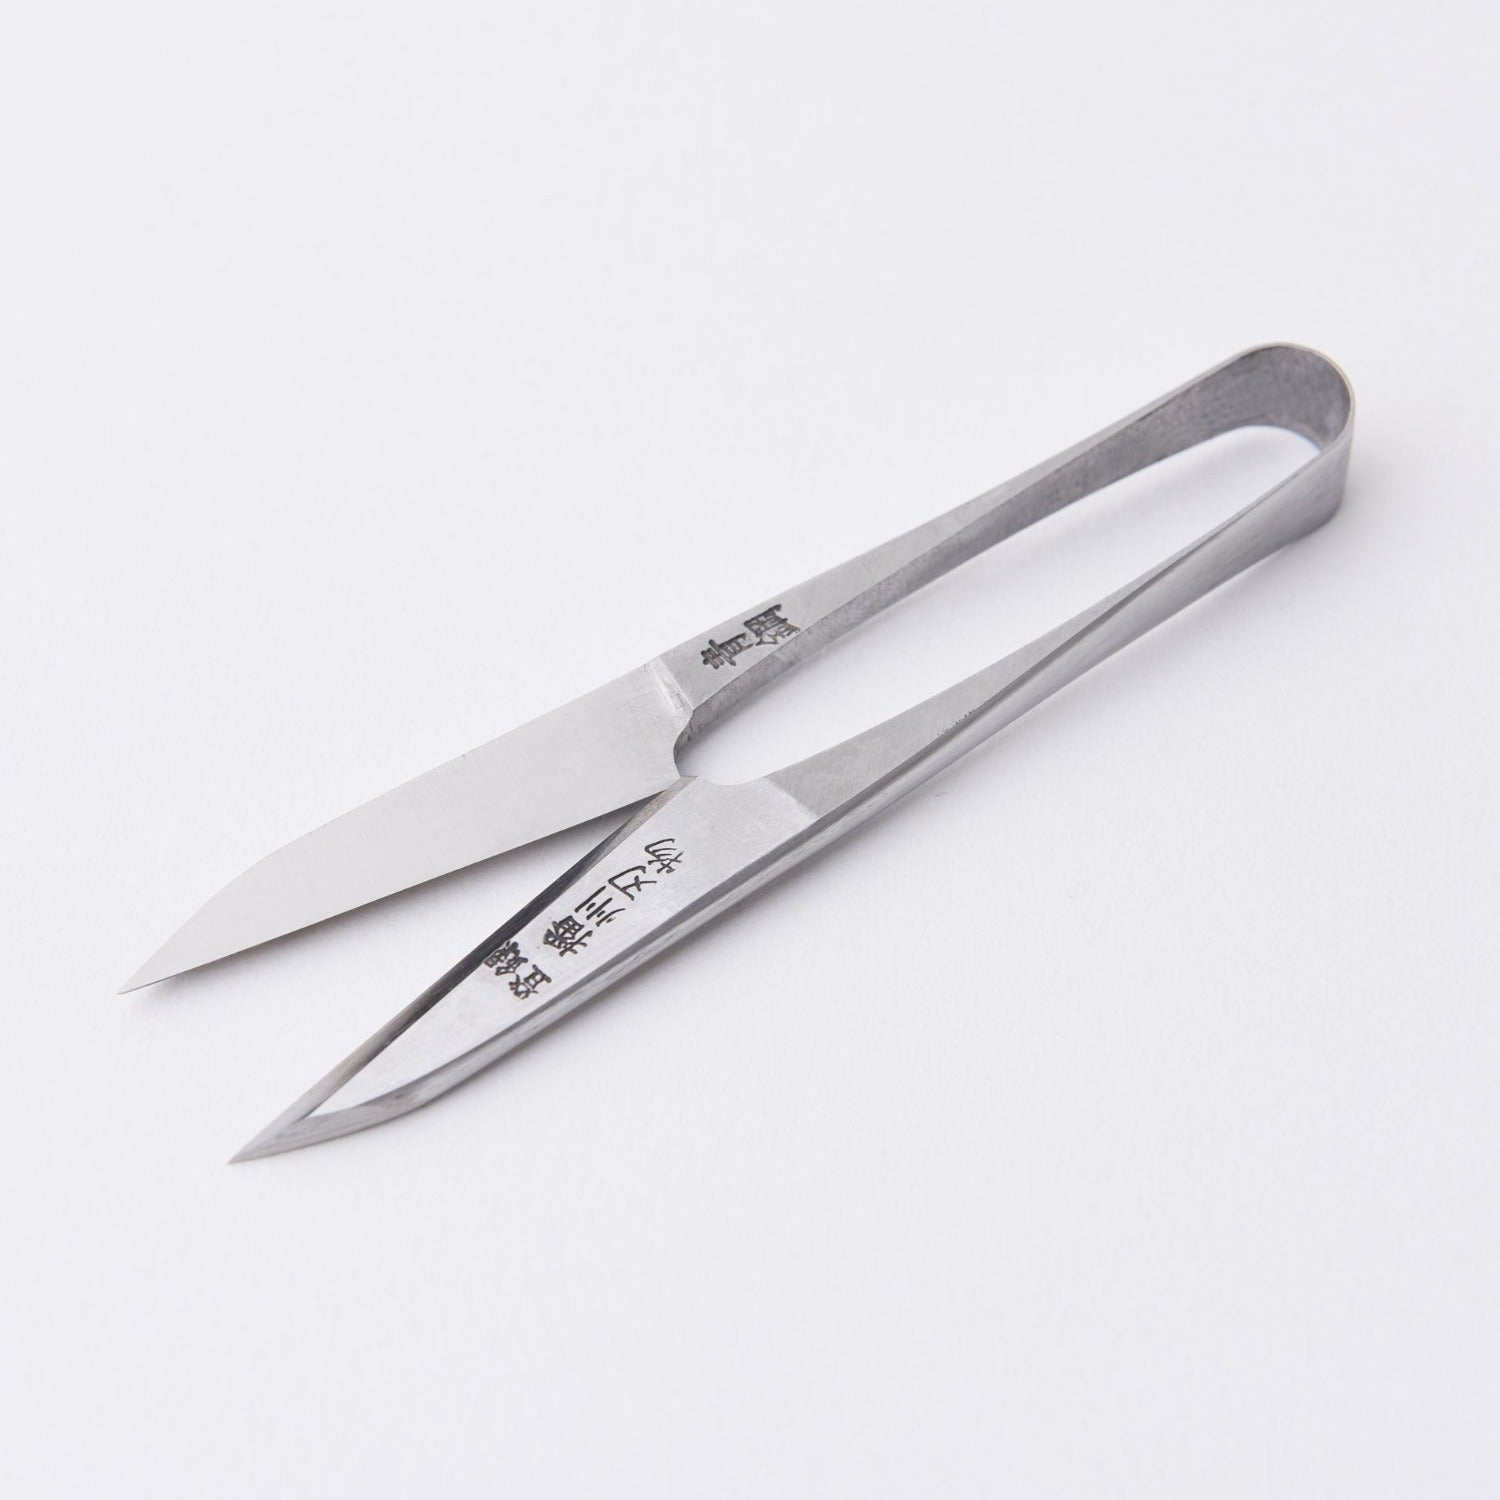 Yoshihiro Nigiri Hasami (Sewing Snips/Scissors) 120mm Made in Japan